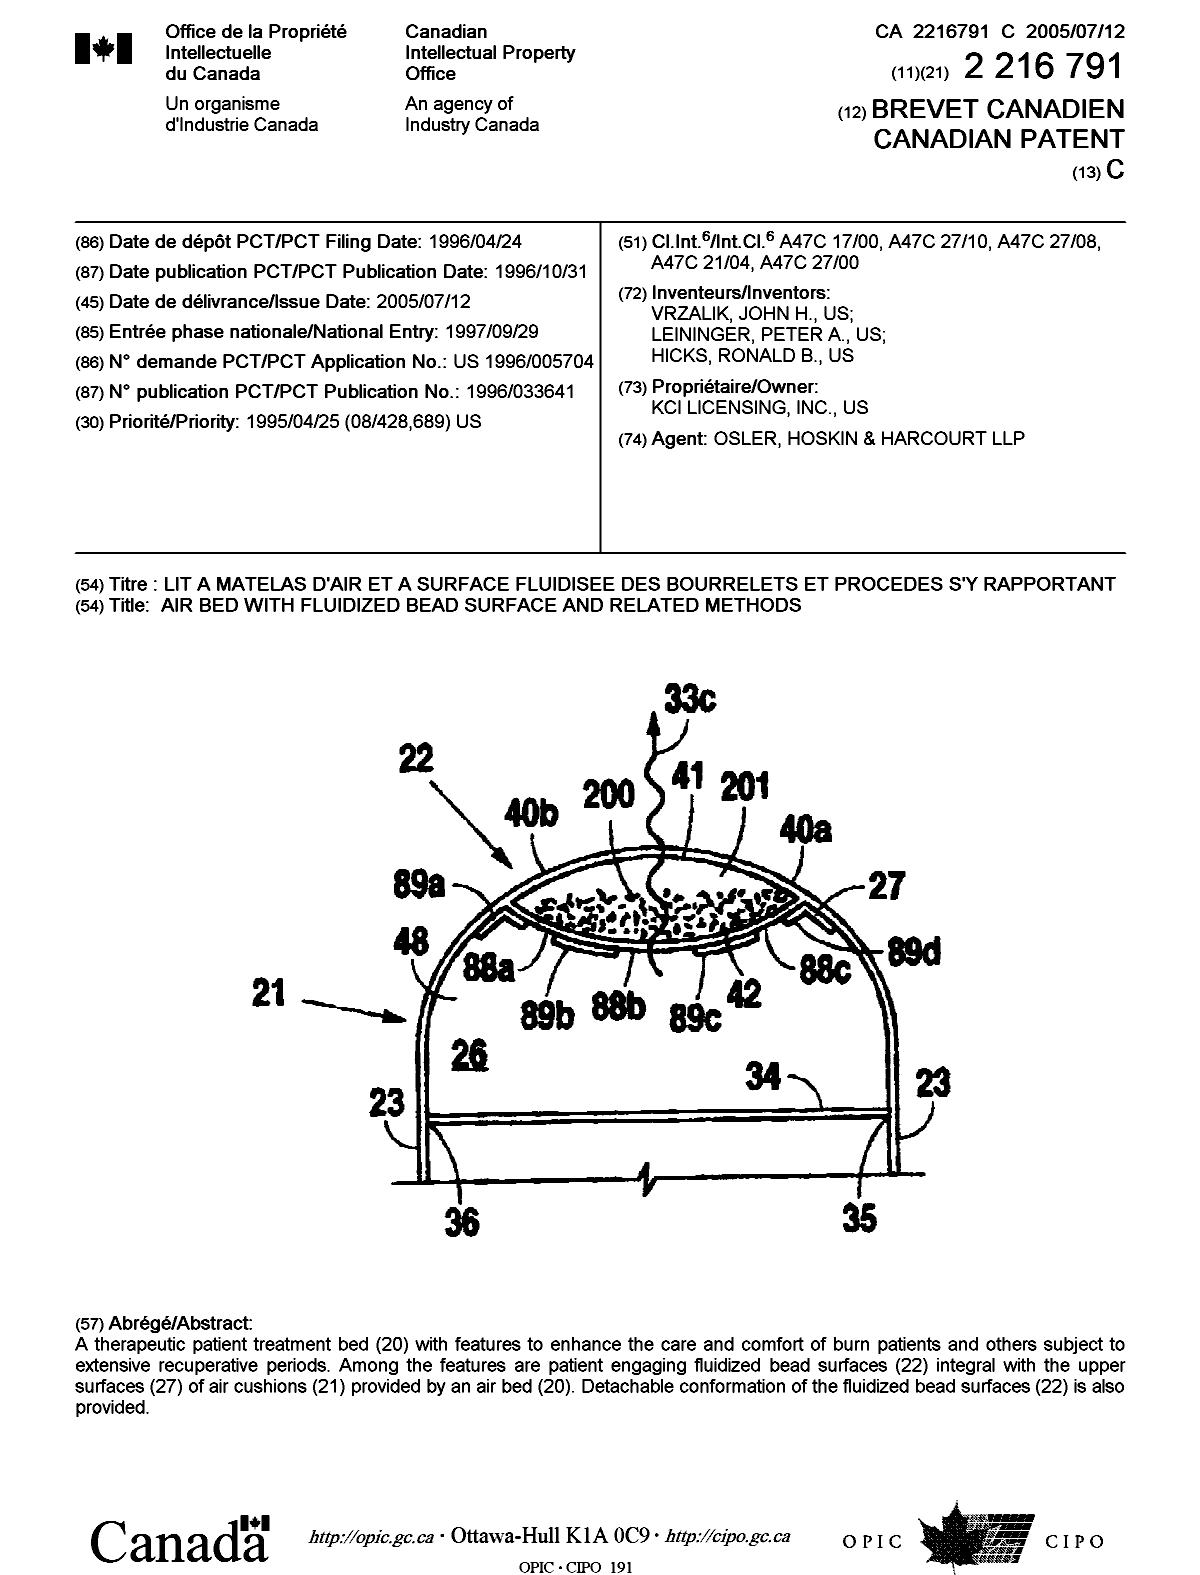 Document de brevet canadien 2216791. Page couverture 20041217. Image 1 de 1